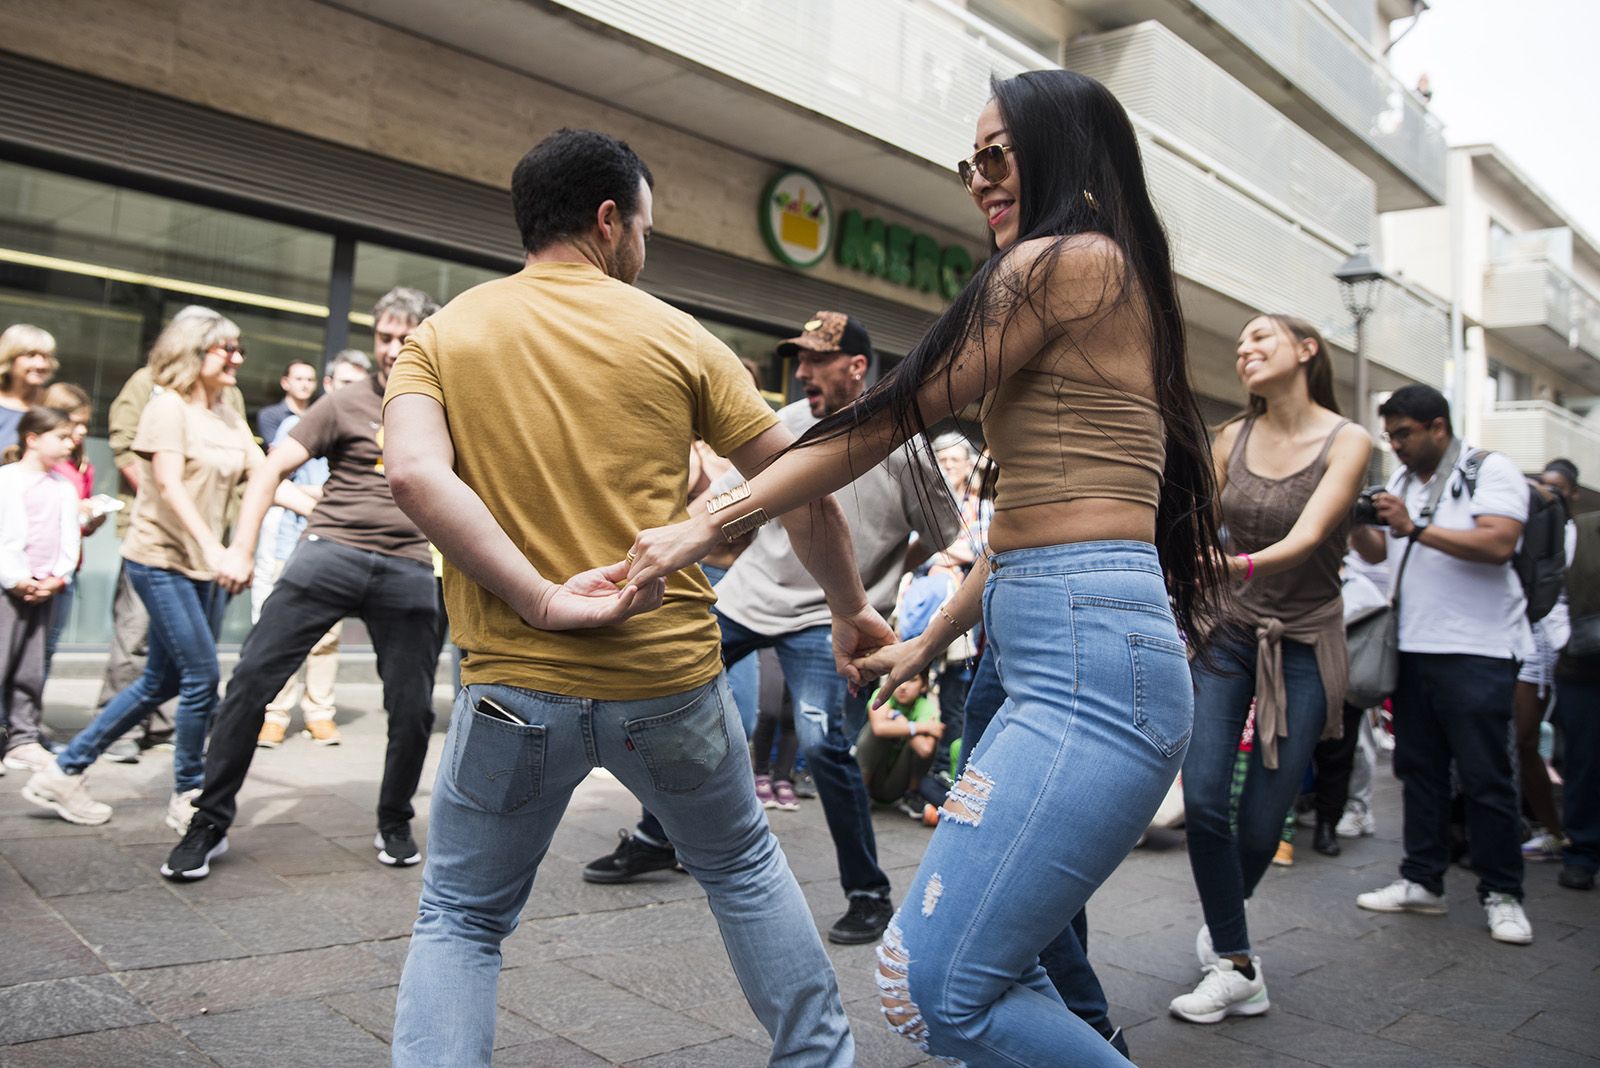 Dia Internacional de la Dansa:  El carrer dansa. FOTO: Bernat Millet.